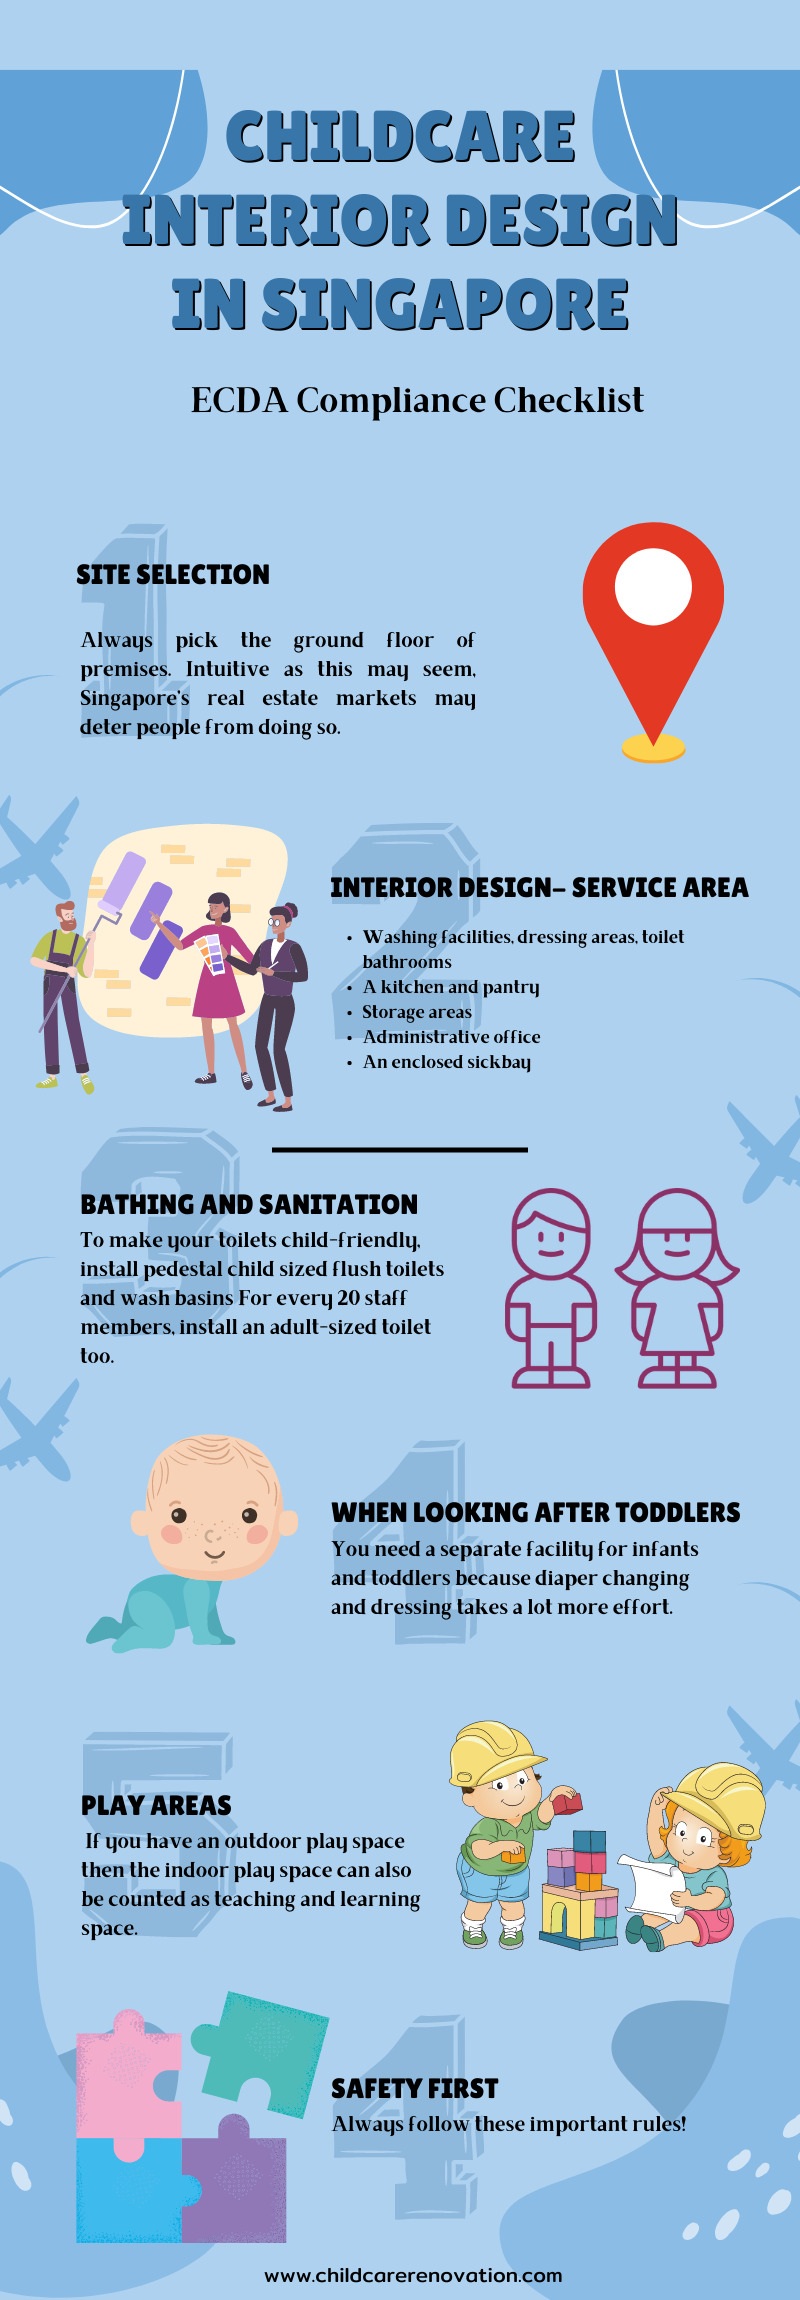 Childcare Interior Design